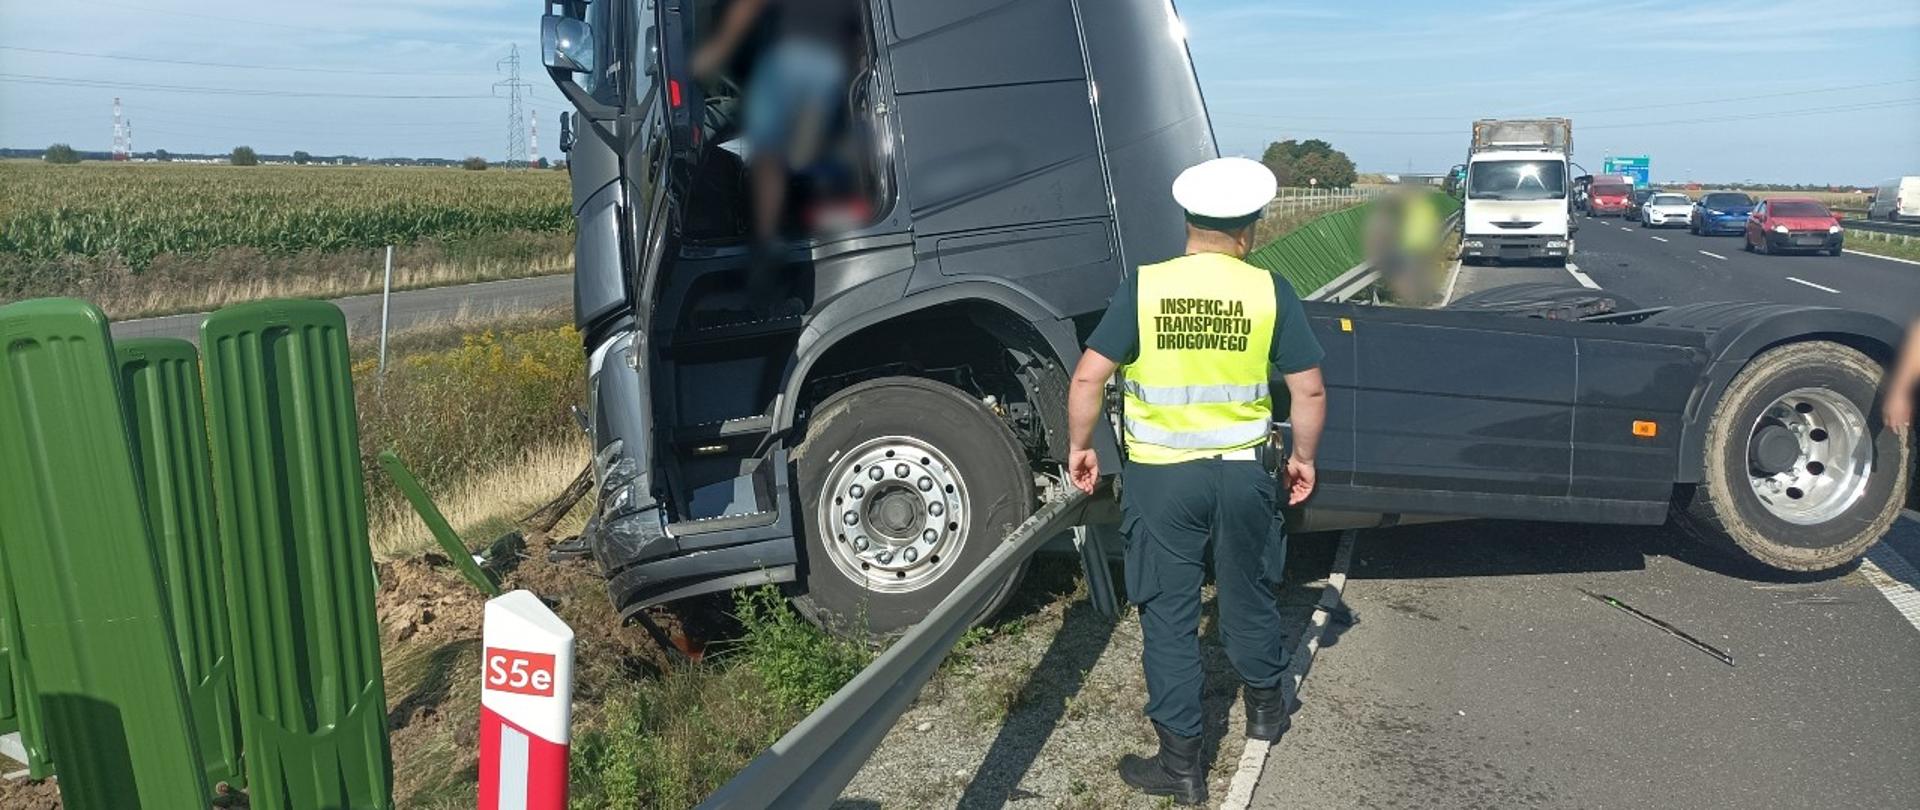 Inspektorzy z Głównego Inspektoratu Transportu Drogowego na miejscu wypadku koło Poznania. Ciągnik siodłowy uderzył w tył ciężarówki-lawety stojącej na pasie awaryjnym.